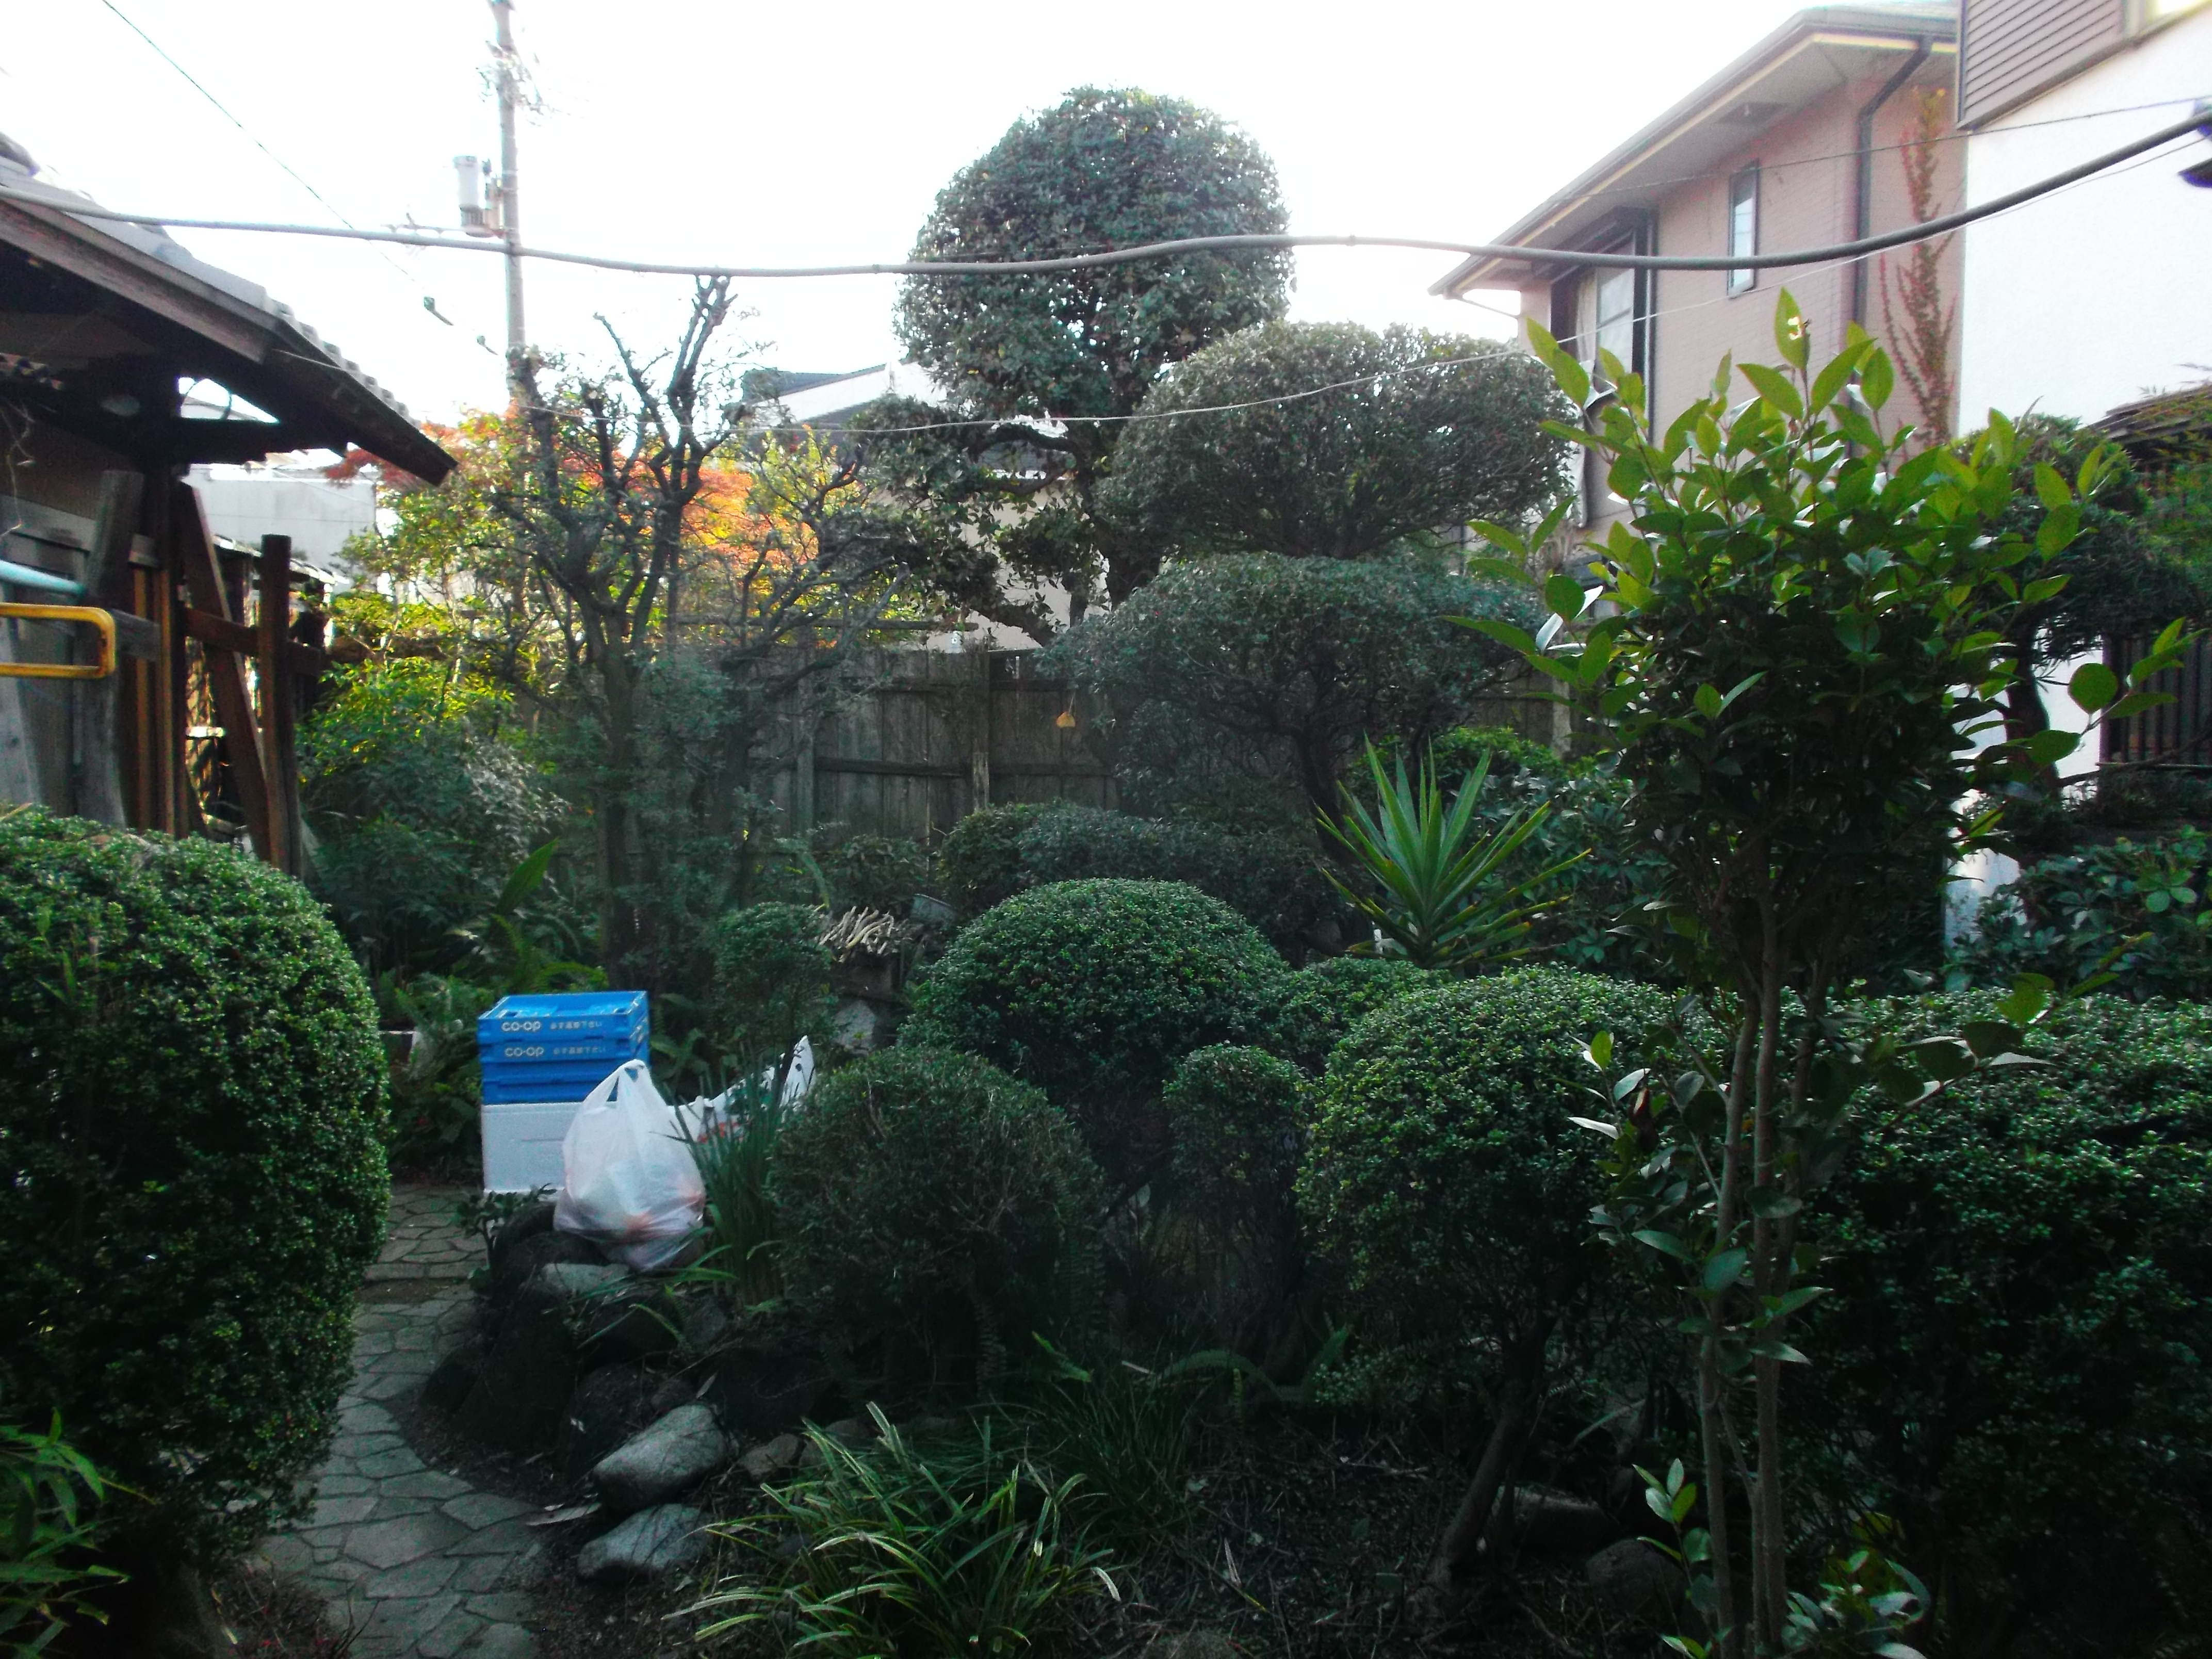 ザクロ等の剪定で出た枝をウッドチップにして利用 岸和田市 アーバングリーン 緑都庭園